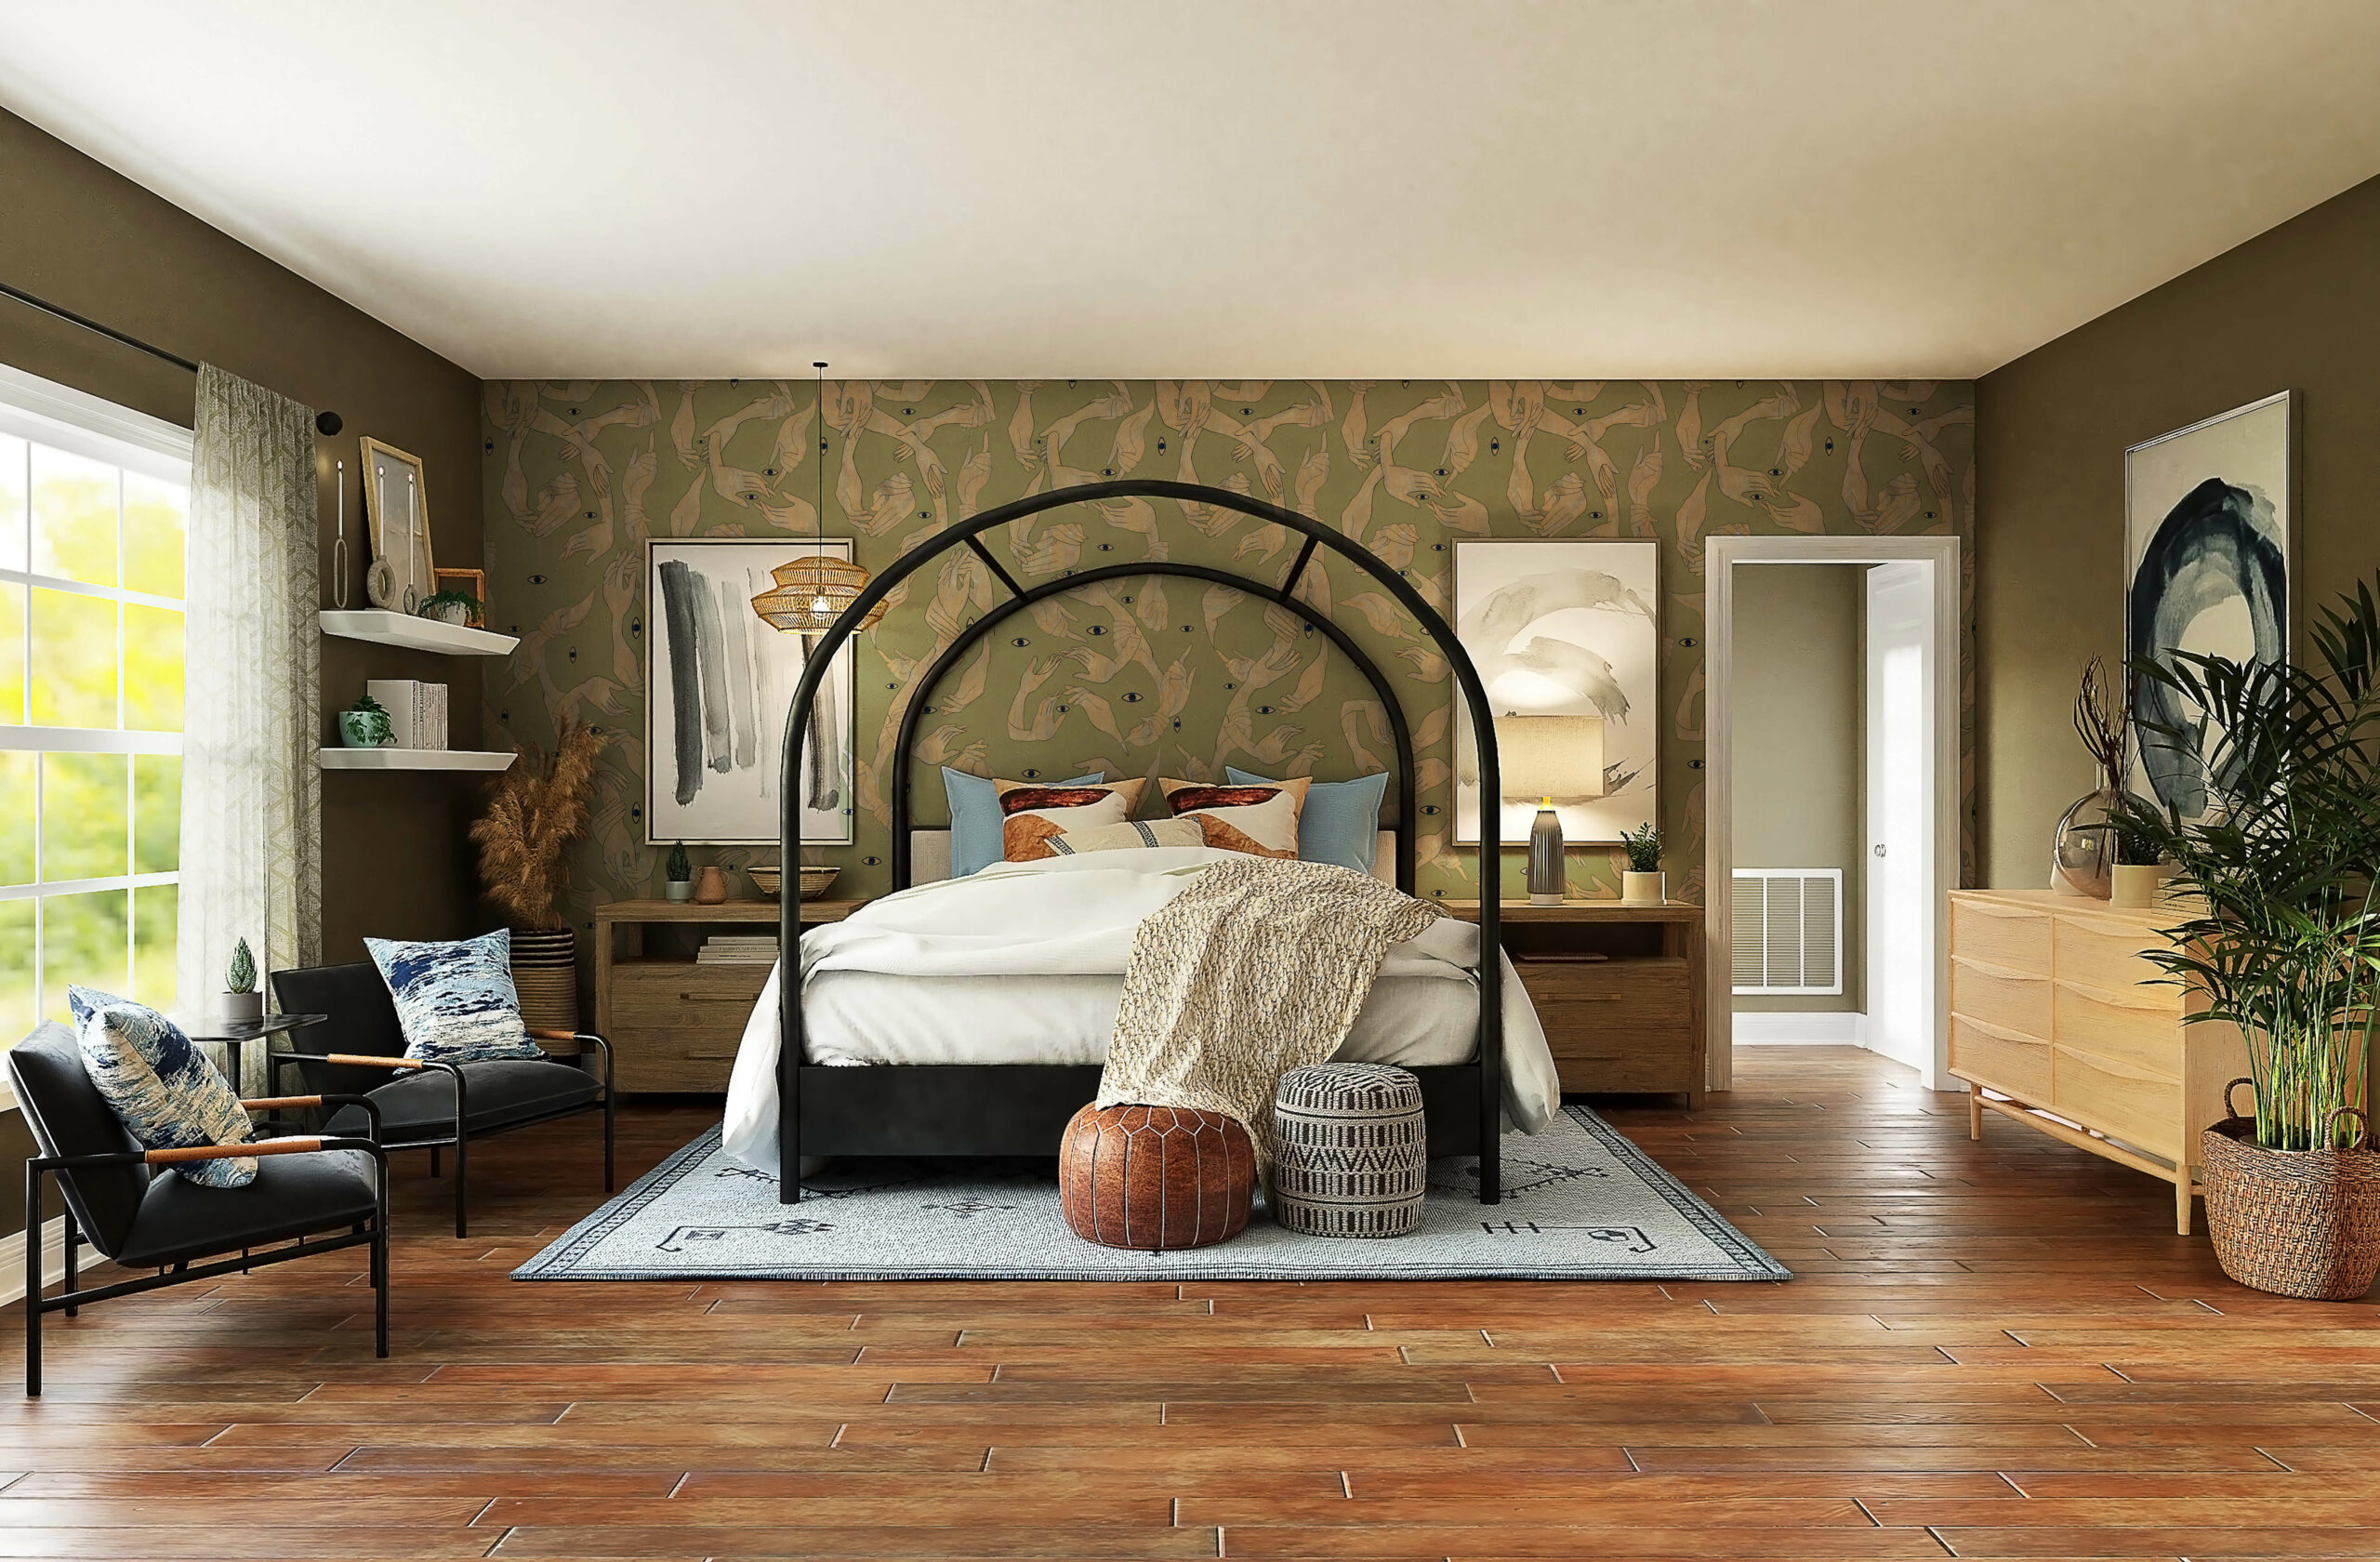 Uno-Nessuno-verde-prato-MaVoix-home-living-room-interior-inspiration